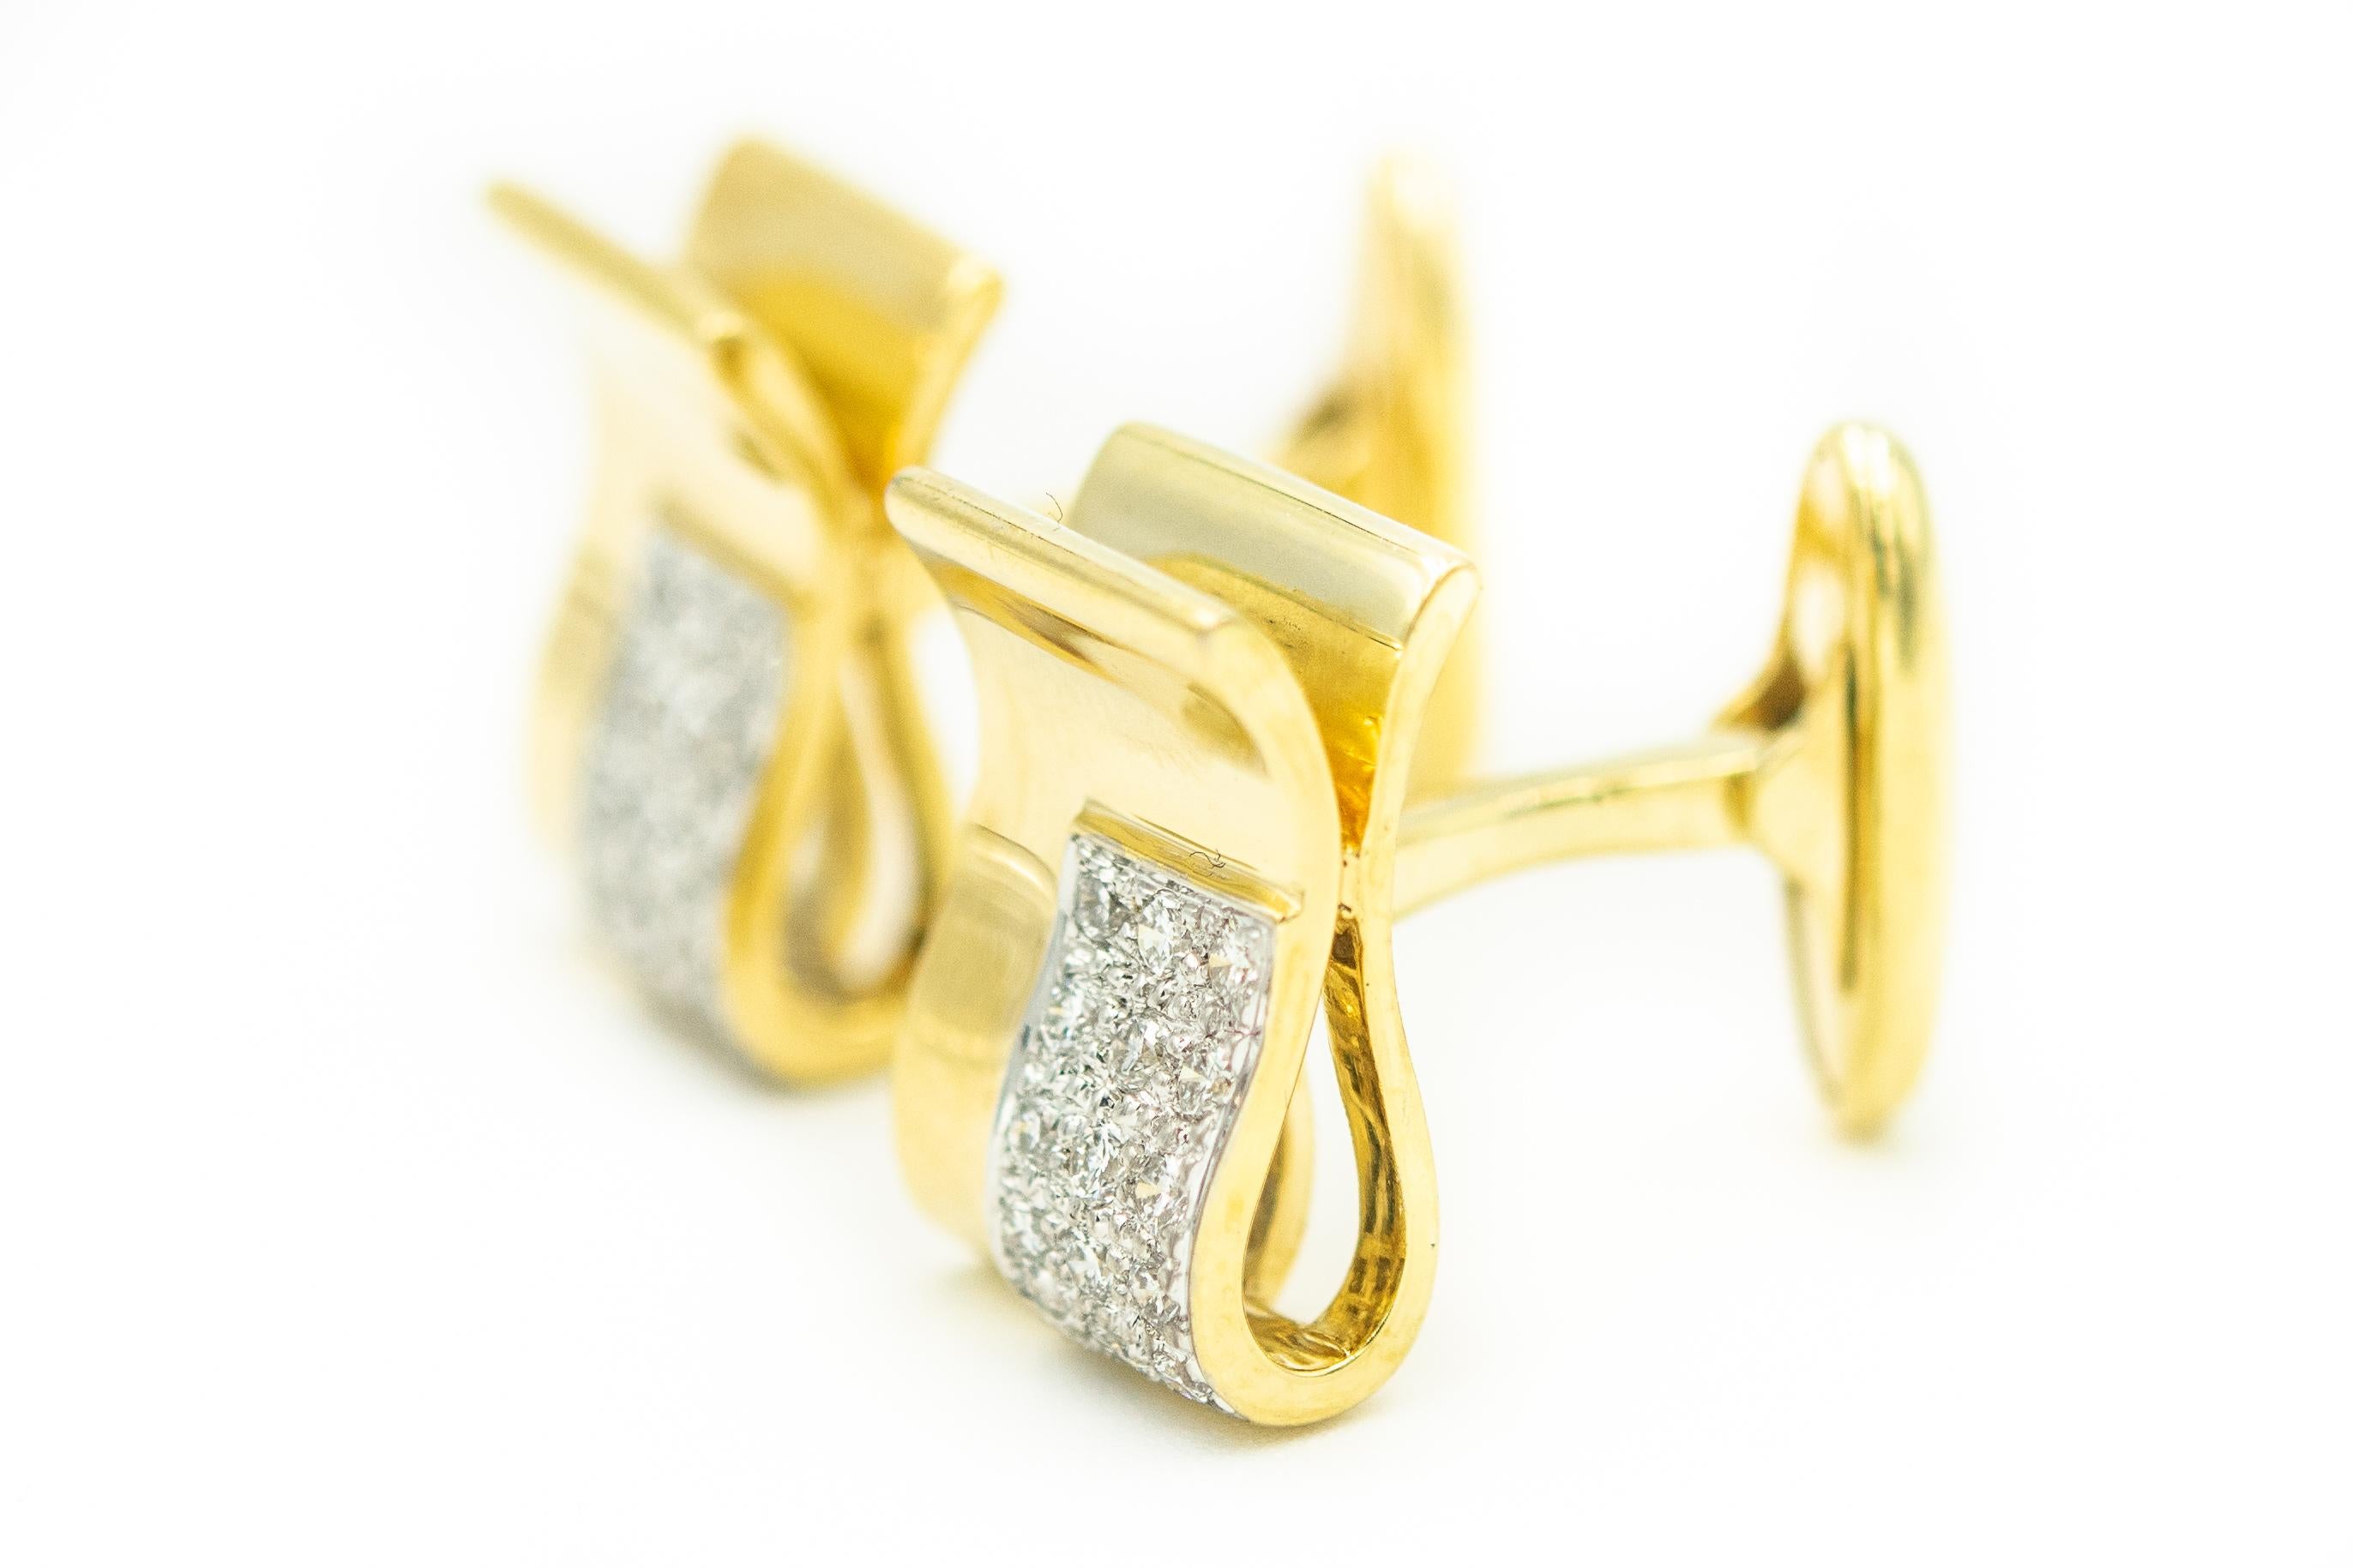 Élégants boutons de manchette rectangulaires tridimensionnels en or jaune 18 carats et diamants. Chaque bouton de manchette est orné de 15 diamants sertis en perles.  Les diamants sont sertis dans de l'or blanc pour donner plus de contraste aux